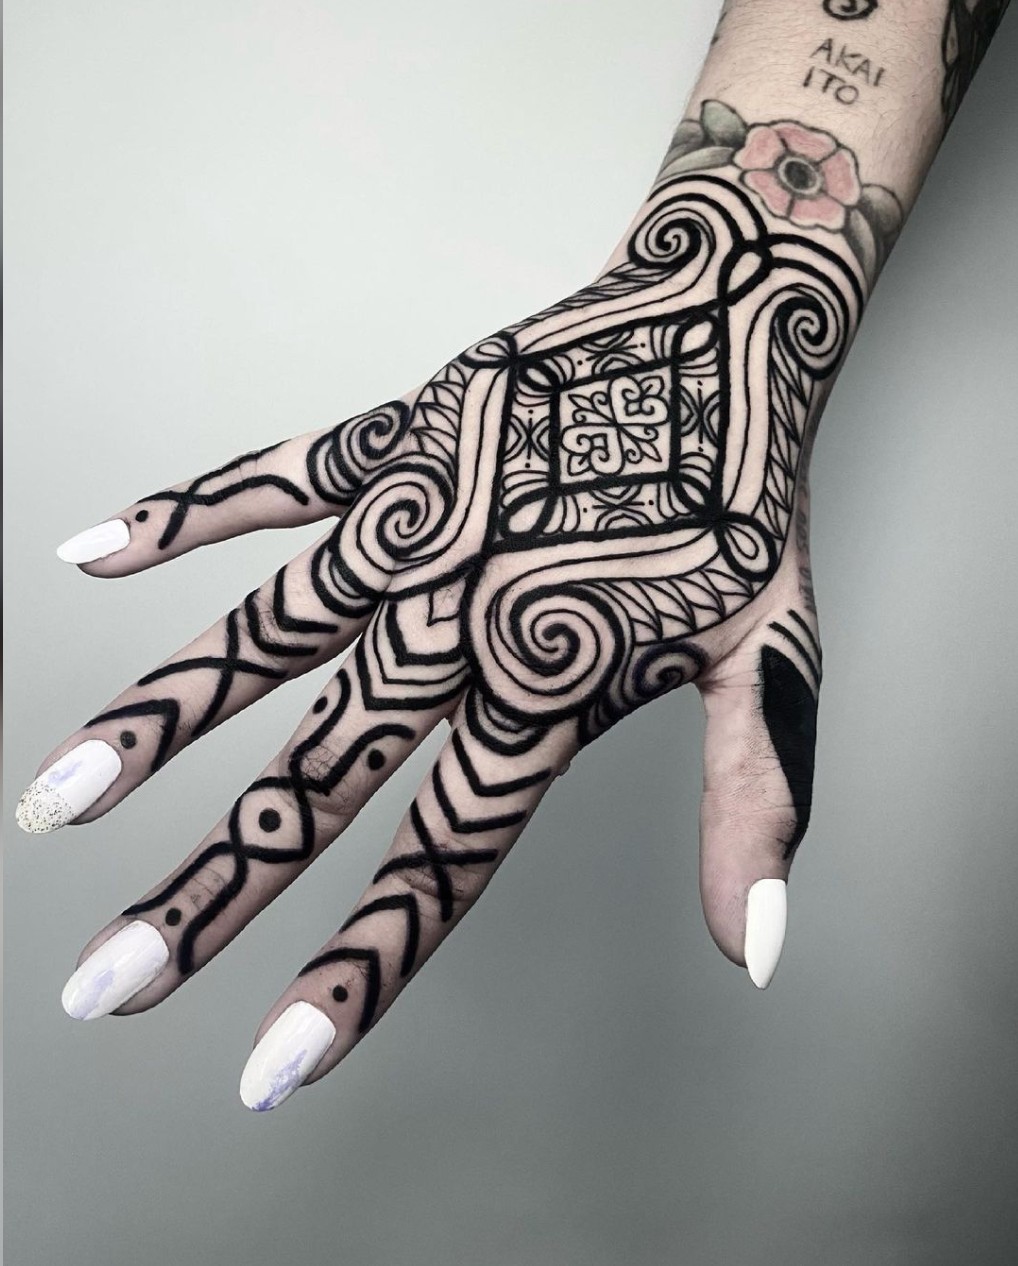 Imagem Com Tatuagem Tribal Feminina Na Mão